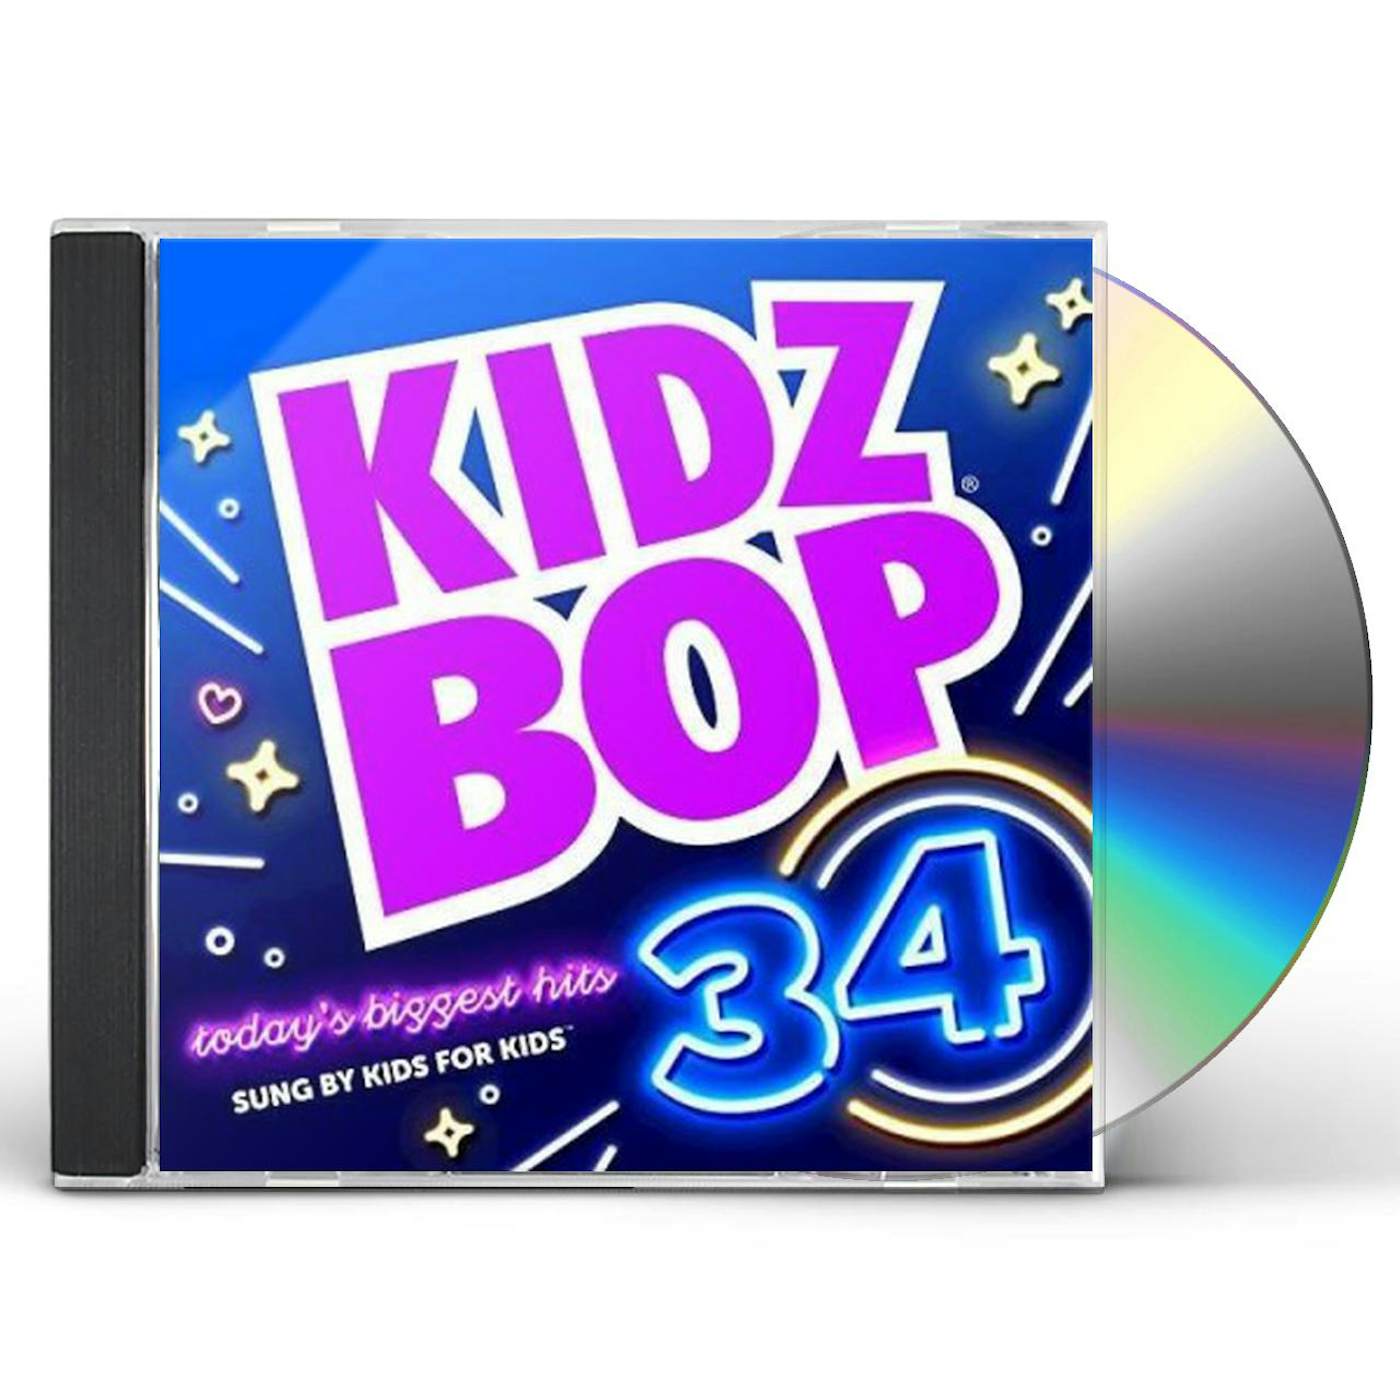 KIDZ BOP 34 CD